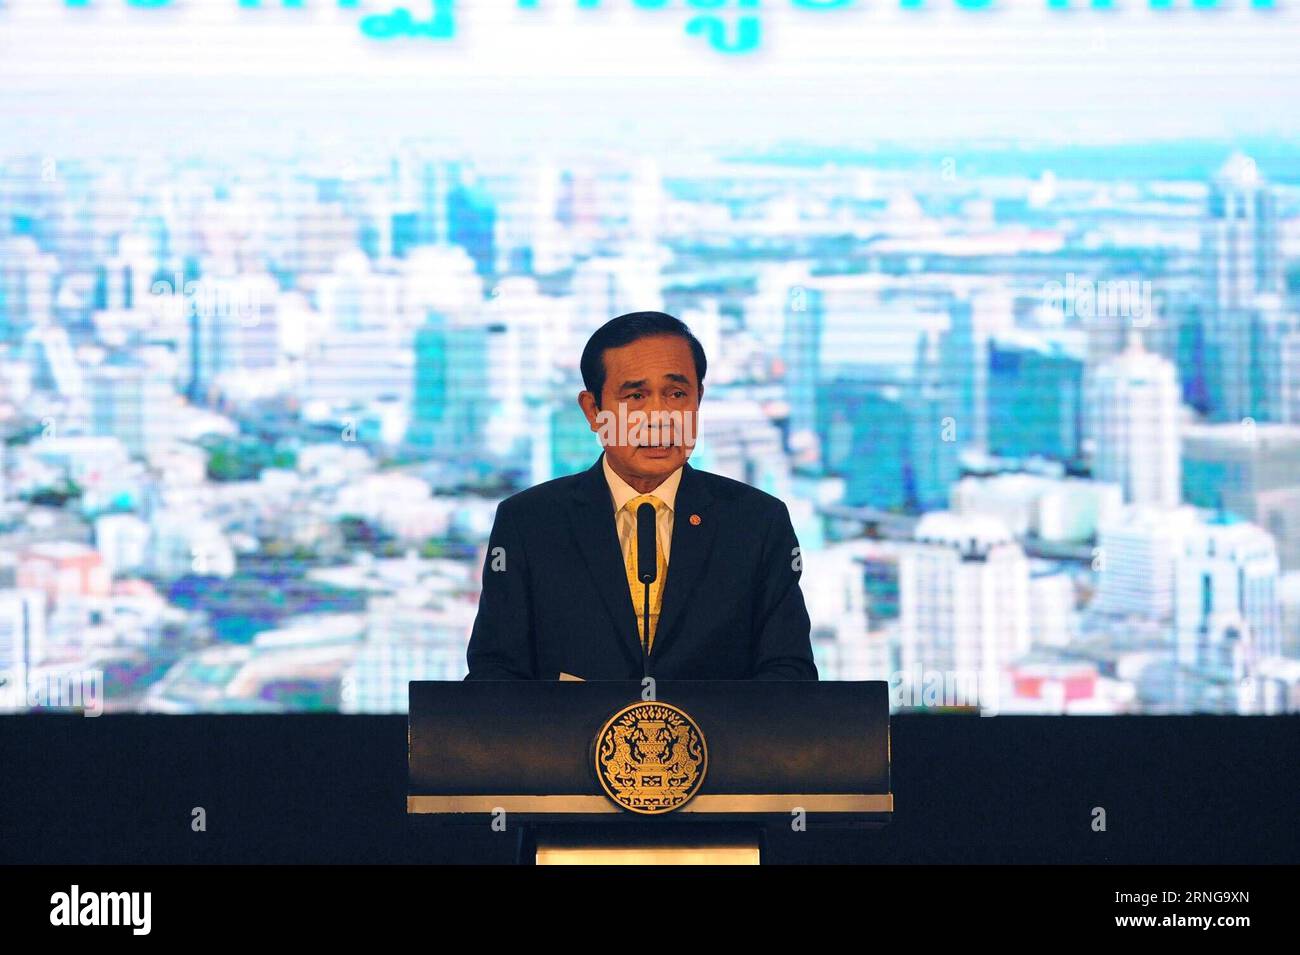 (160915) -- BANGKOK, 15. September 2016 -- der thailändische Premierminister Prayut Chan-o-cha spricht während einer Pressekonferenz über die Leistungen der Regierung in den letzten zwei Jahren im thailändischen Regierungsgebäude in Bangkok, der Hauptstadt Thailands, am 15. September 2016. Thailand könnte sich möglicherweise vom langjährigen Status eines Entwicklungslandes der Dritten Welt zu einem entwickelten Land der Ersten Welt aufrüsten, sagte der thailändische Premierminister Prayut Chan-o-cha am Donnerstag. (Syq) THAILAND-BANGKOK-PM-PRESSEKONFERENZ RachenxSageamsak PUBLICATIONxNOTxINxCHN 160915 Bangkok 15. September 2016 thailändische Premierminister Prayut C Stockfoto